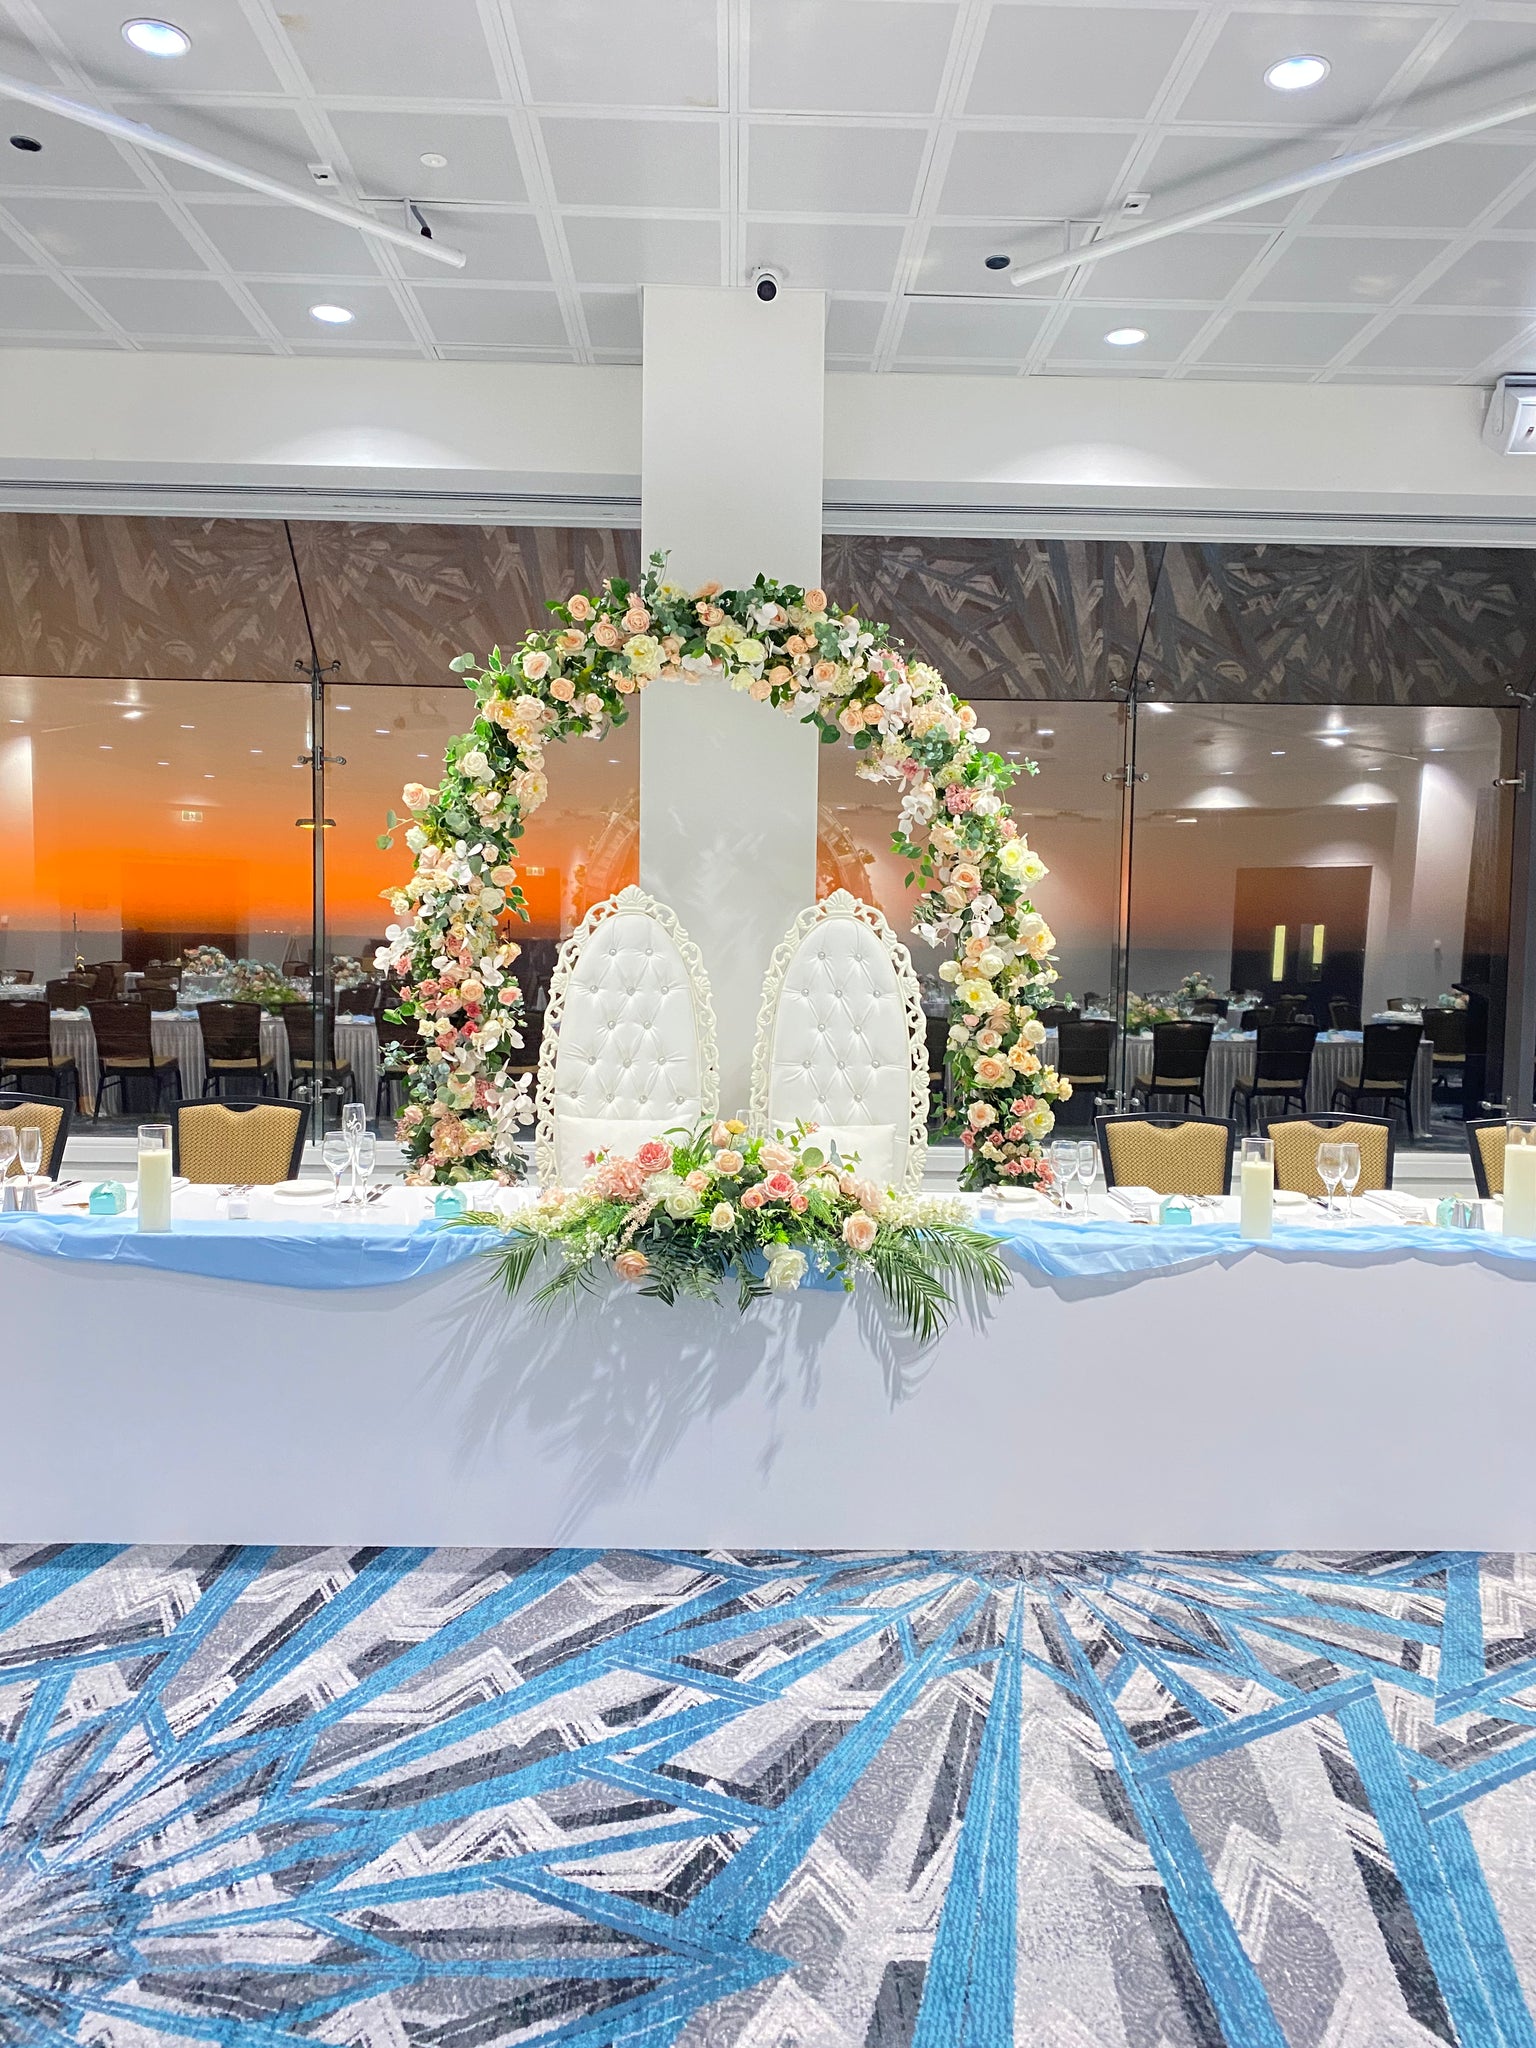 Bridal table flowers arrangement set